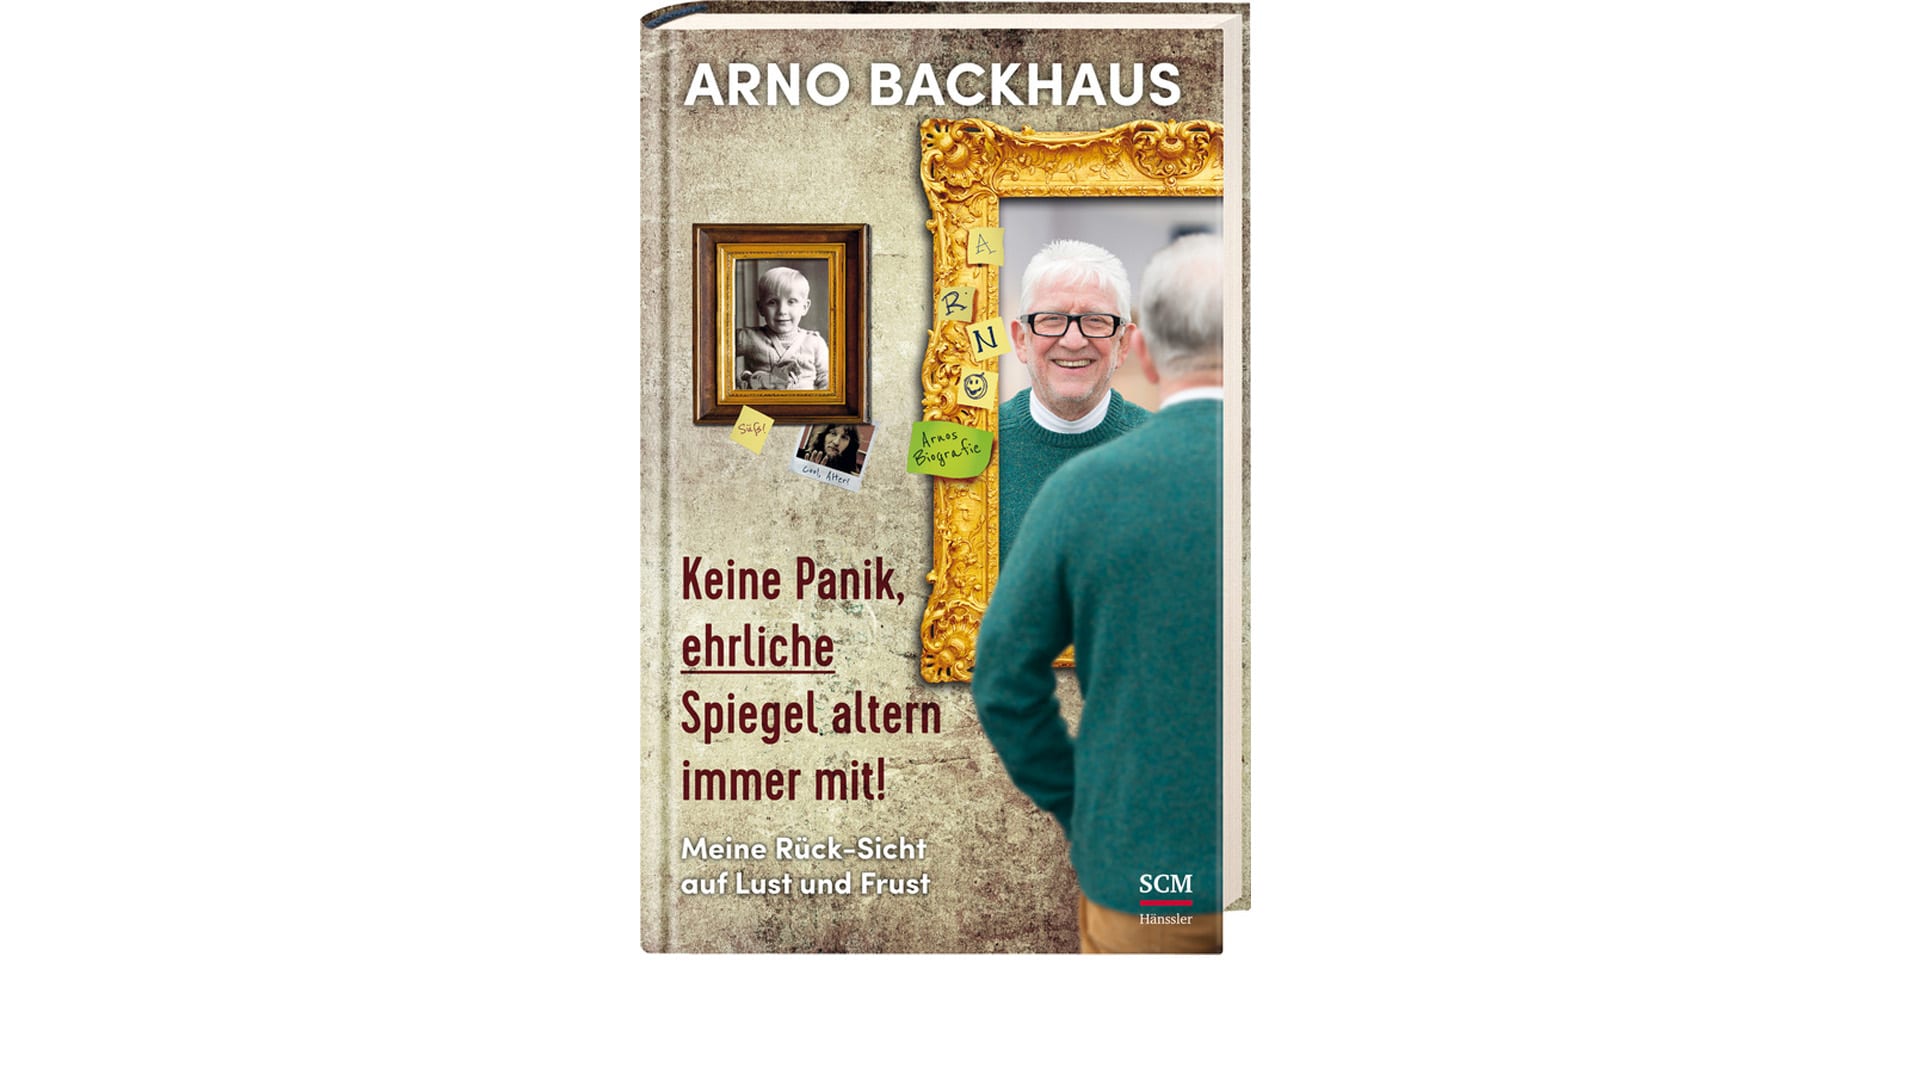 Die Biografie von Arno Backhaus ist im SCM-Verlag erschienen